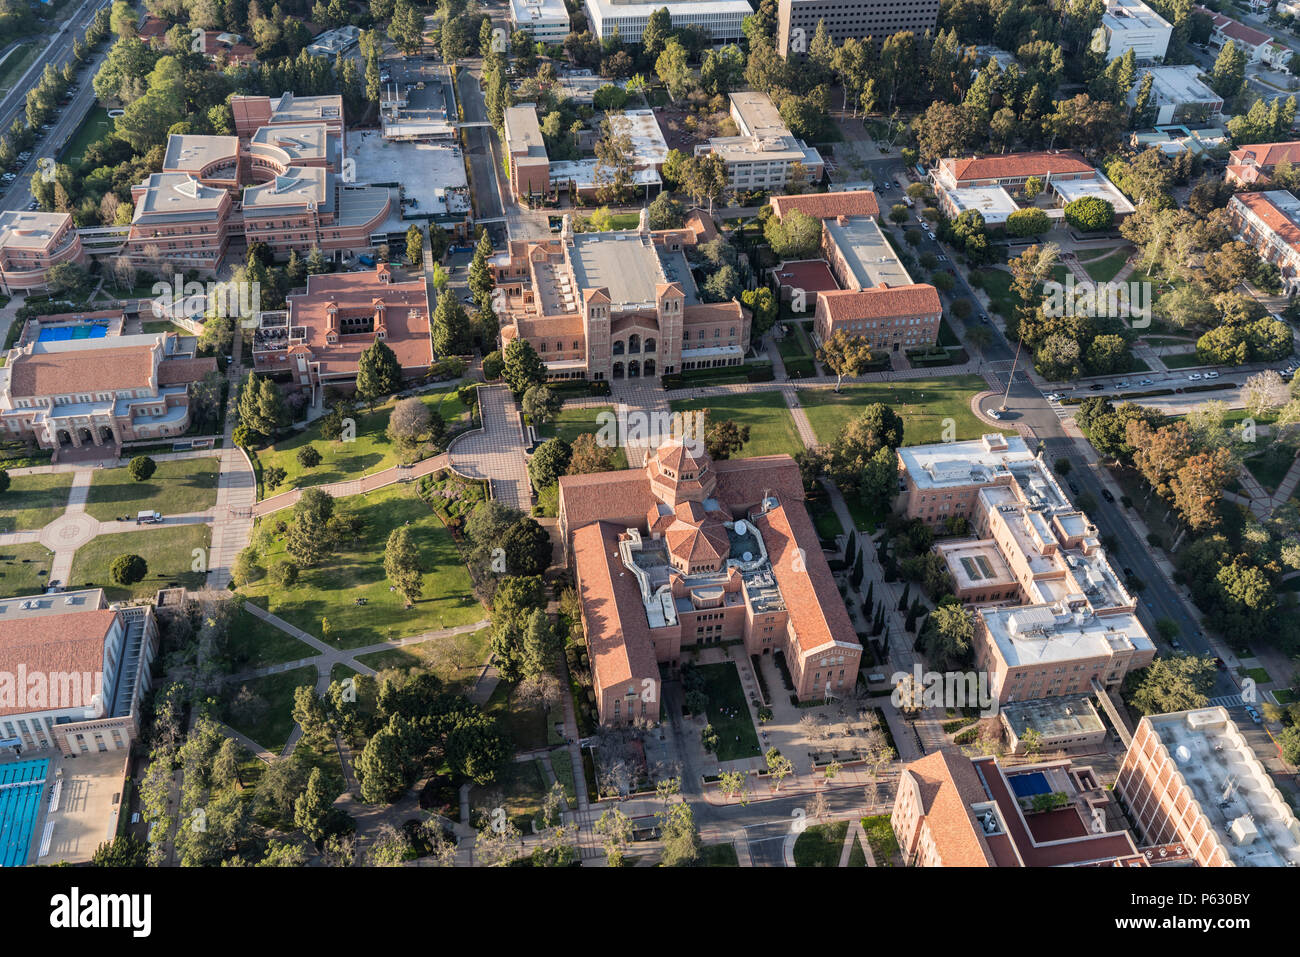 Los Angeles, Californie, USA - 18 Avril 2018 : Vue aérienne du campus de l'UCLA historique bâtiments près de Westwood. Banque D'Images